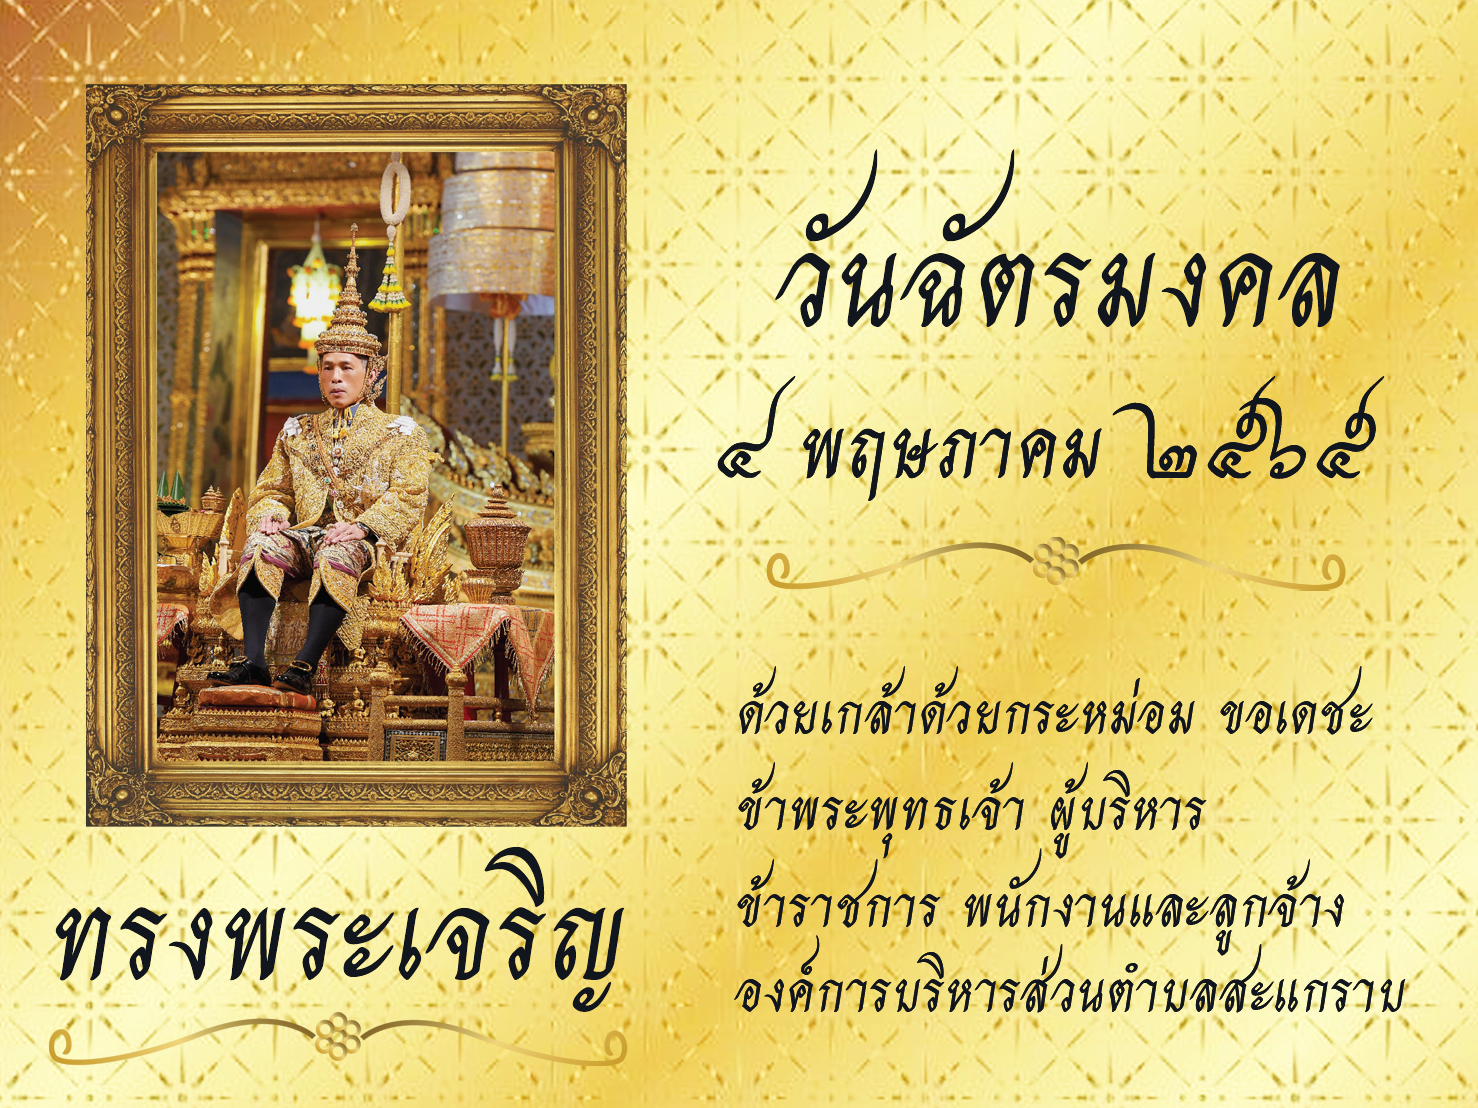 องค์การบริหารส่วนตำบลสะแกราบ ขอเชิญประชาชนชาวไทย ร่วมลงนามถวายพระพร เนื่องในวันฉัตรมงคล วันที่ 4 พฤษภาคม 2565 ตลอดเดือนพฤษภาคม